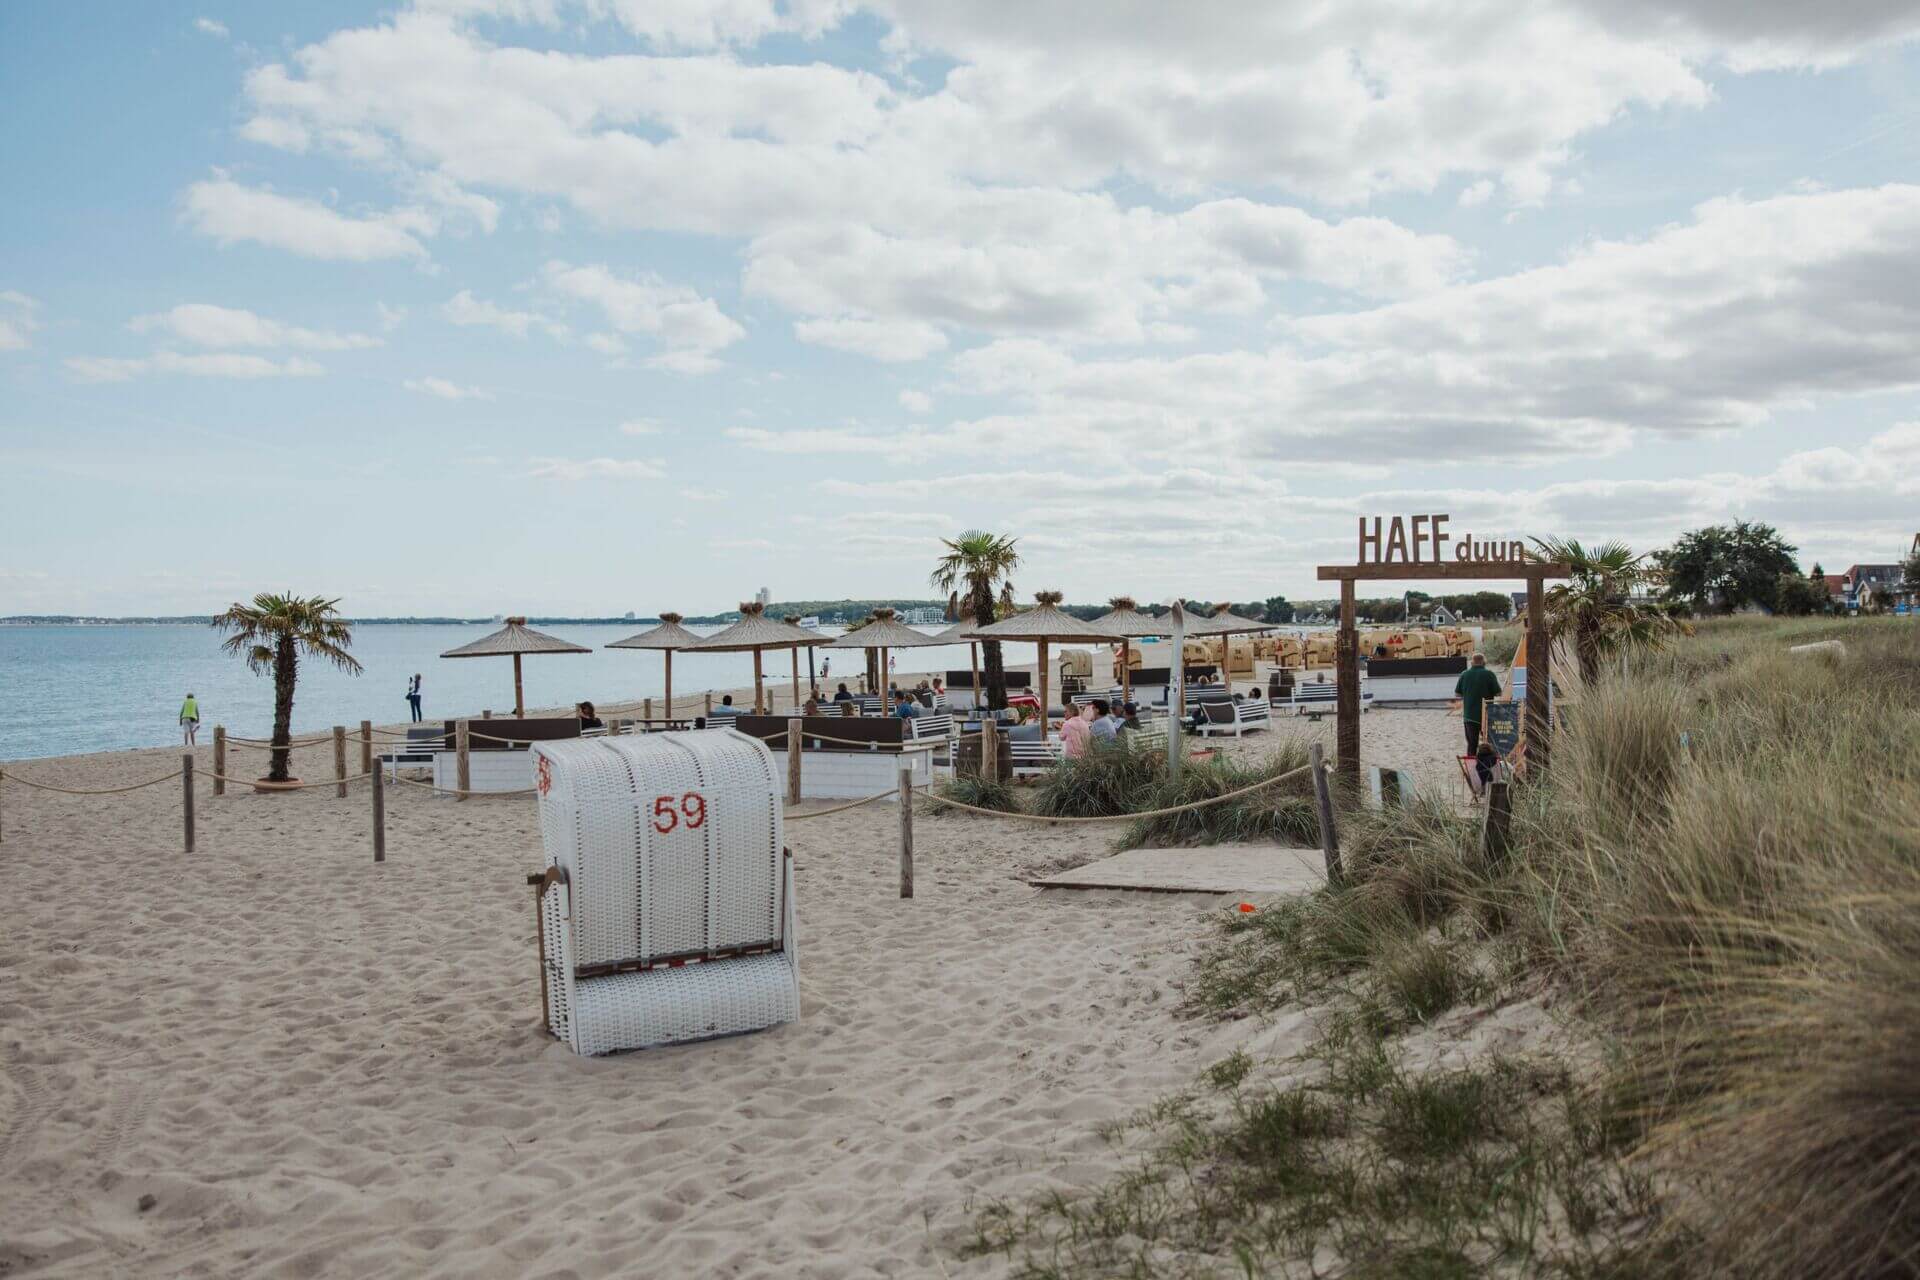 Ein entspannter Strandbereich mit Strandkörben und Sonnenschirmen auf dem Sand, mit Blick auf das Meer. Ein Schild mit der Aufschrift "HAFFdüün" steht an einem Zugangsweg durch das Dünengras. Menschen genießen die Umgebung, einige gehen am Strand entlang,